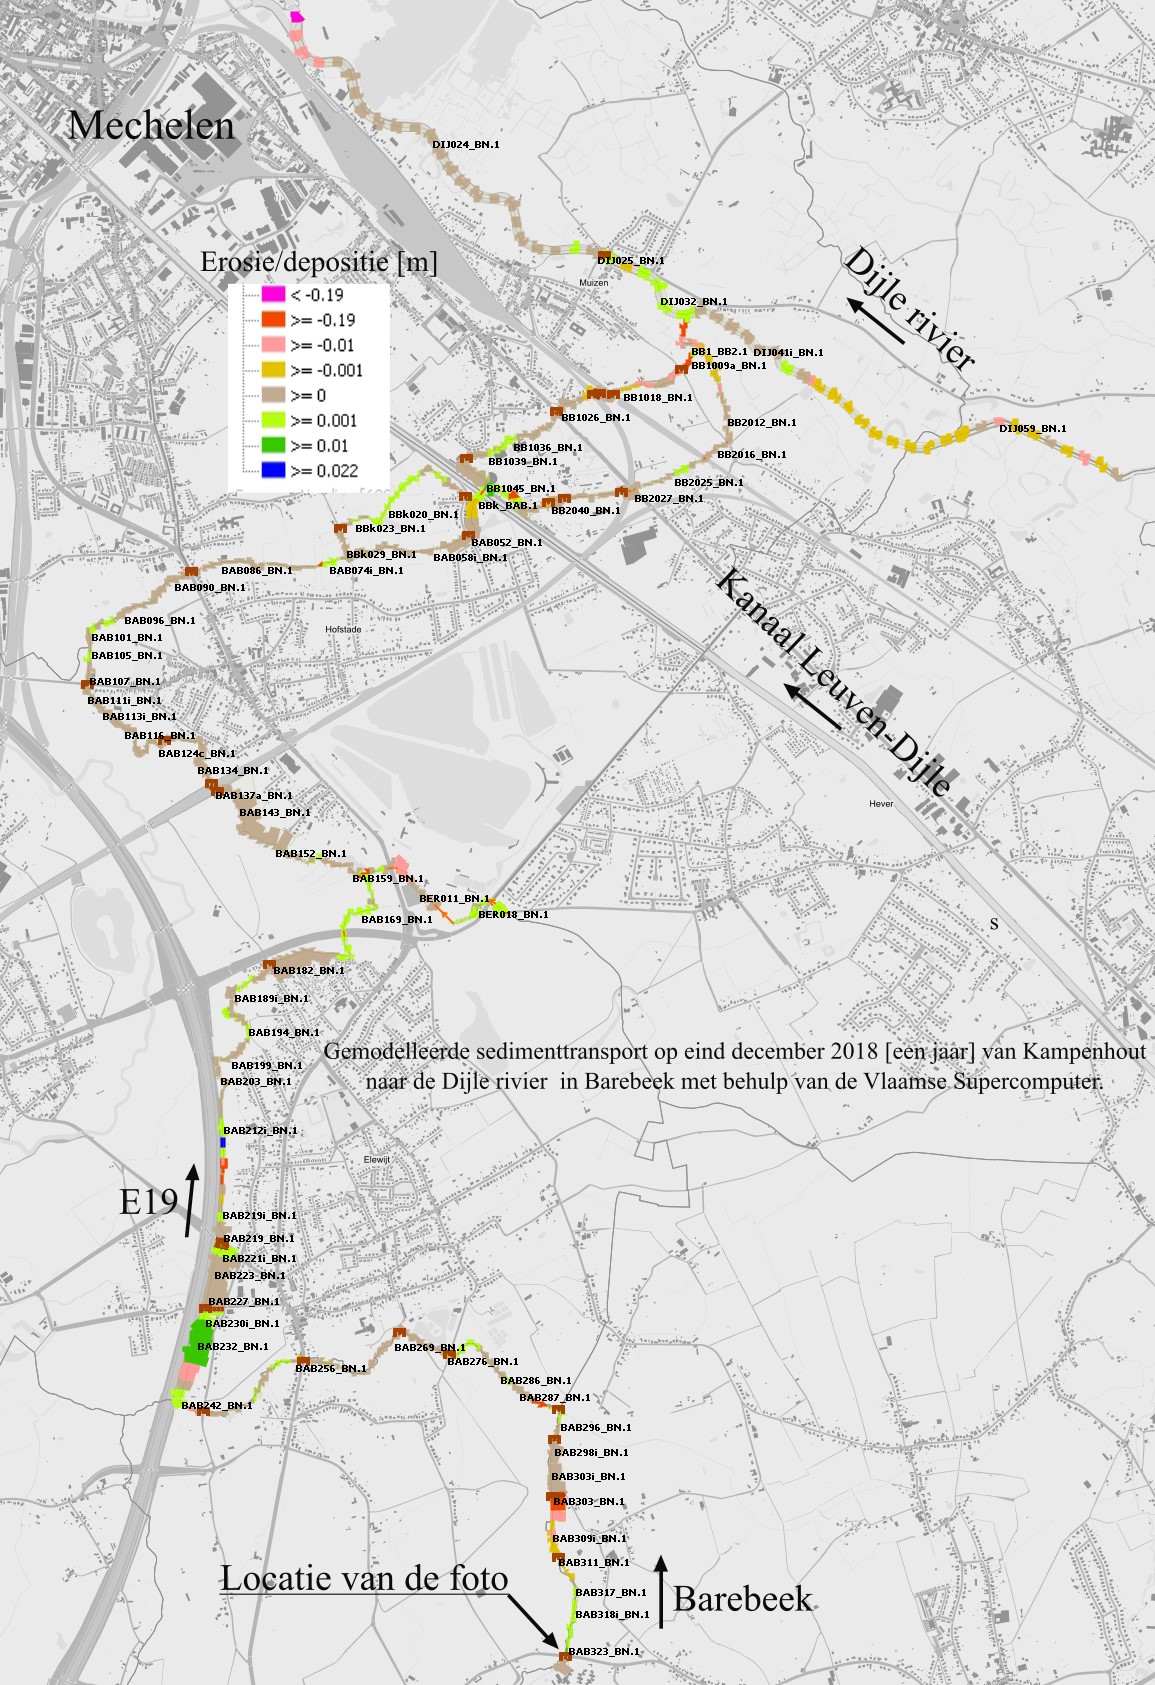 Modeling of sediment transport from Kampenhout to the Dijler River in Barebeek